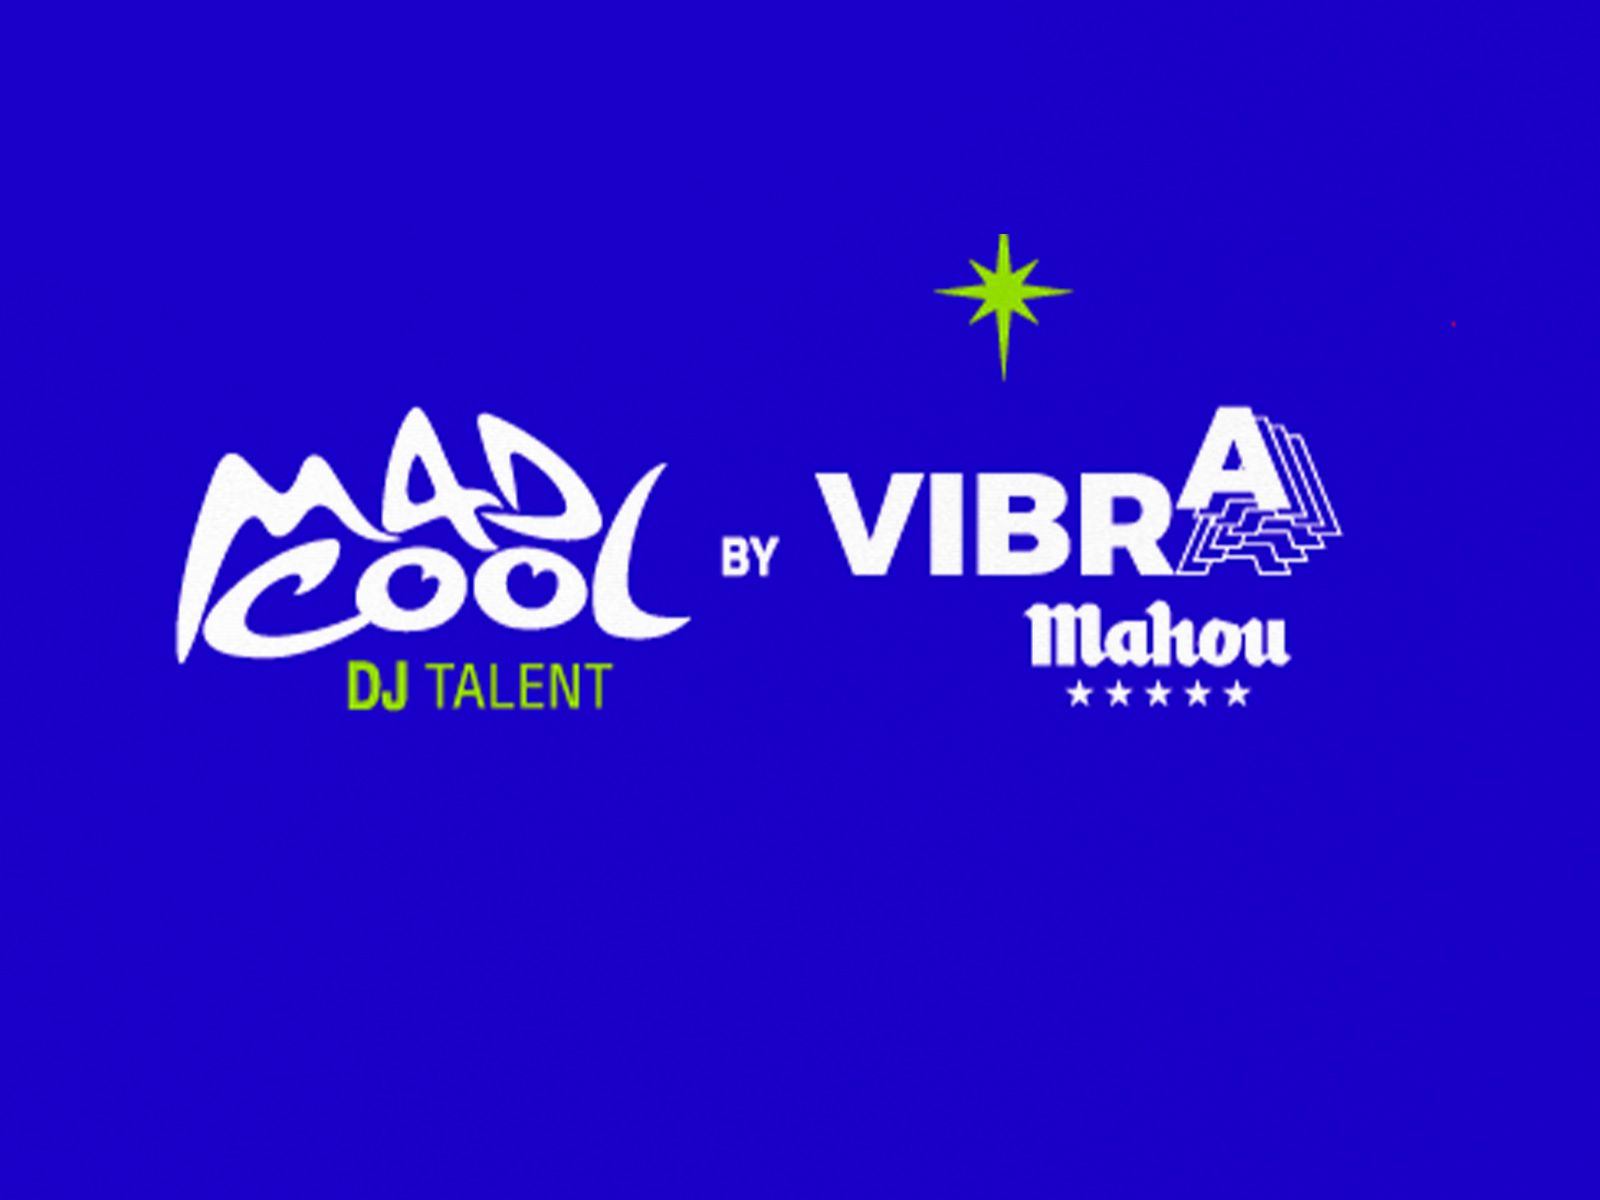 Abierto el plazo de inscripción para Mad Cool DJ Talent by Vibra Mahou